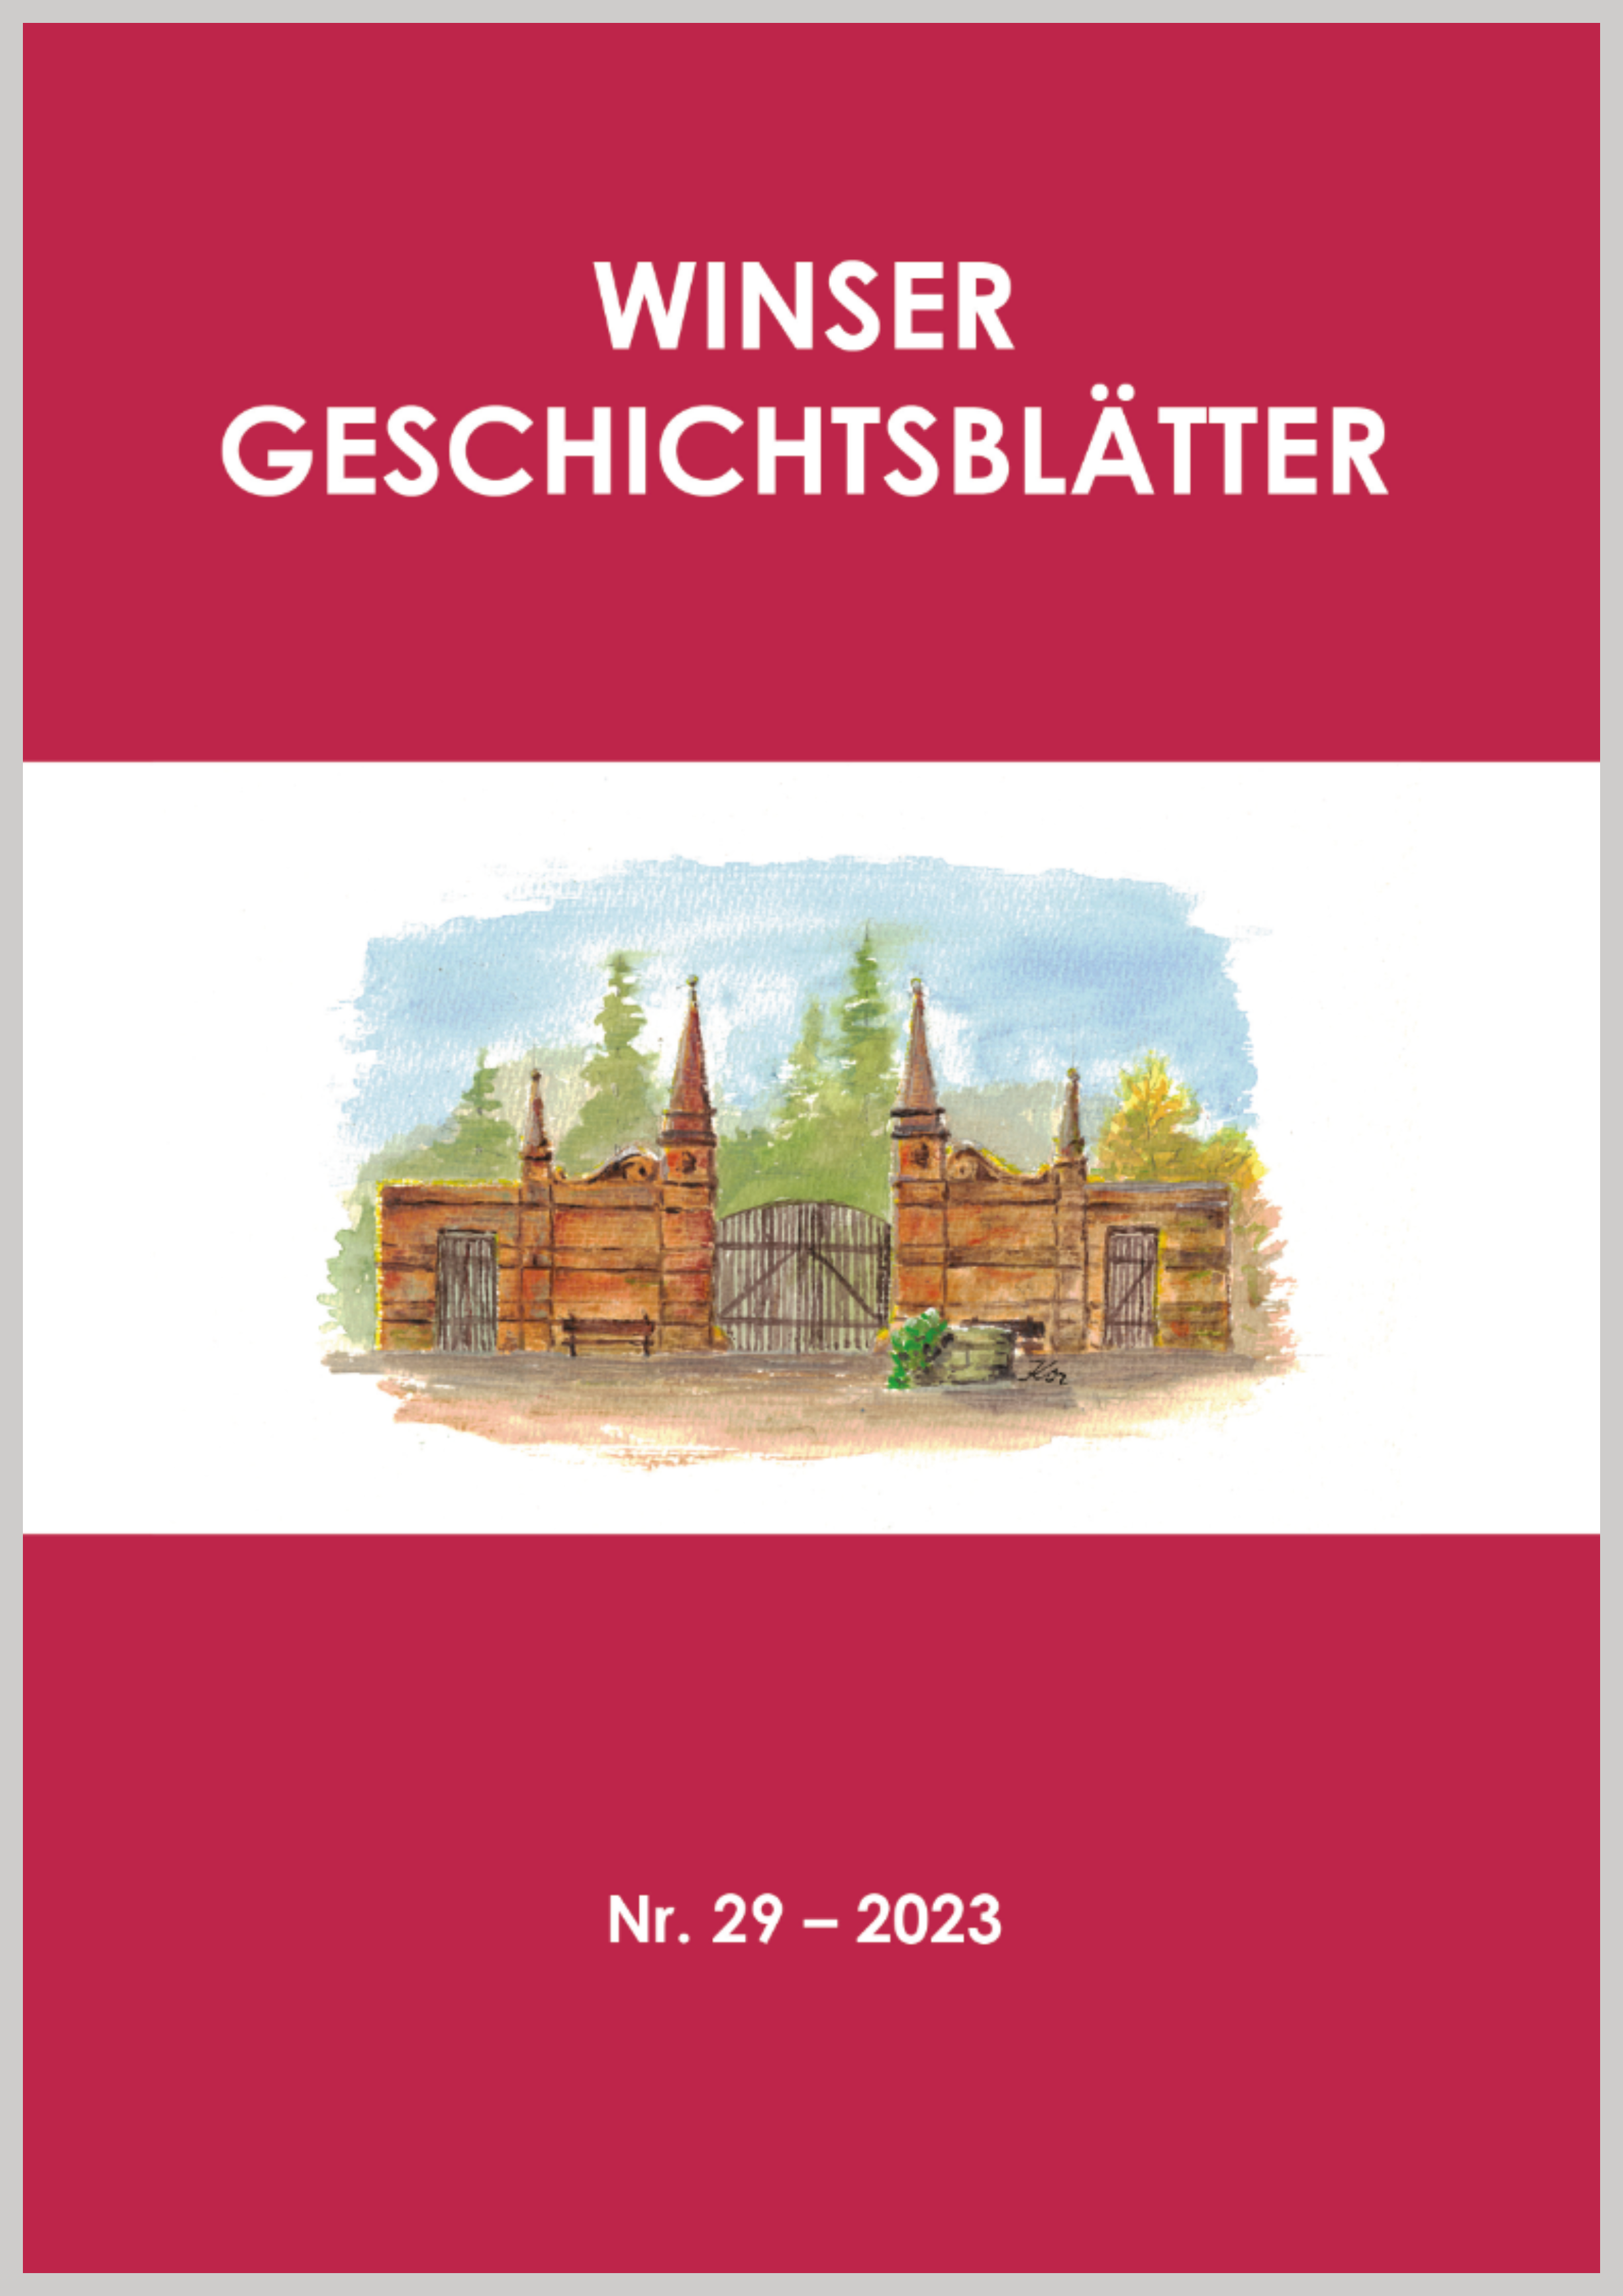 Titel "Winser Geschichtsblätter Nr. 29 – 2023" mit Zeichnung eines Tores.